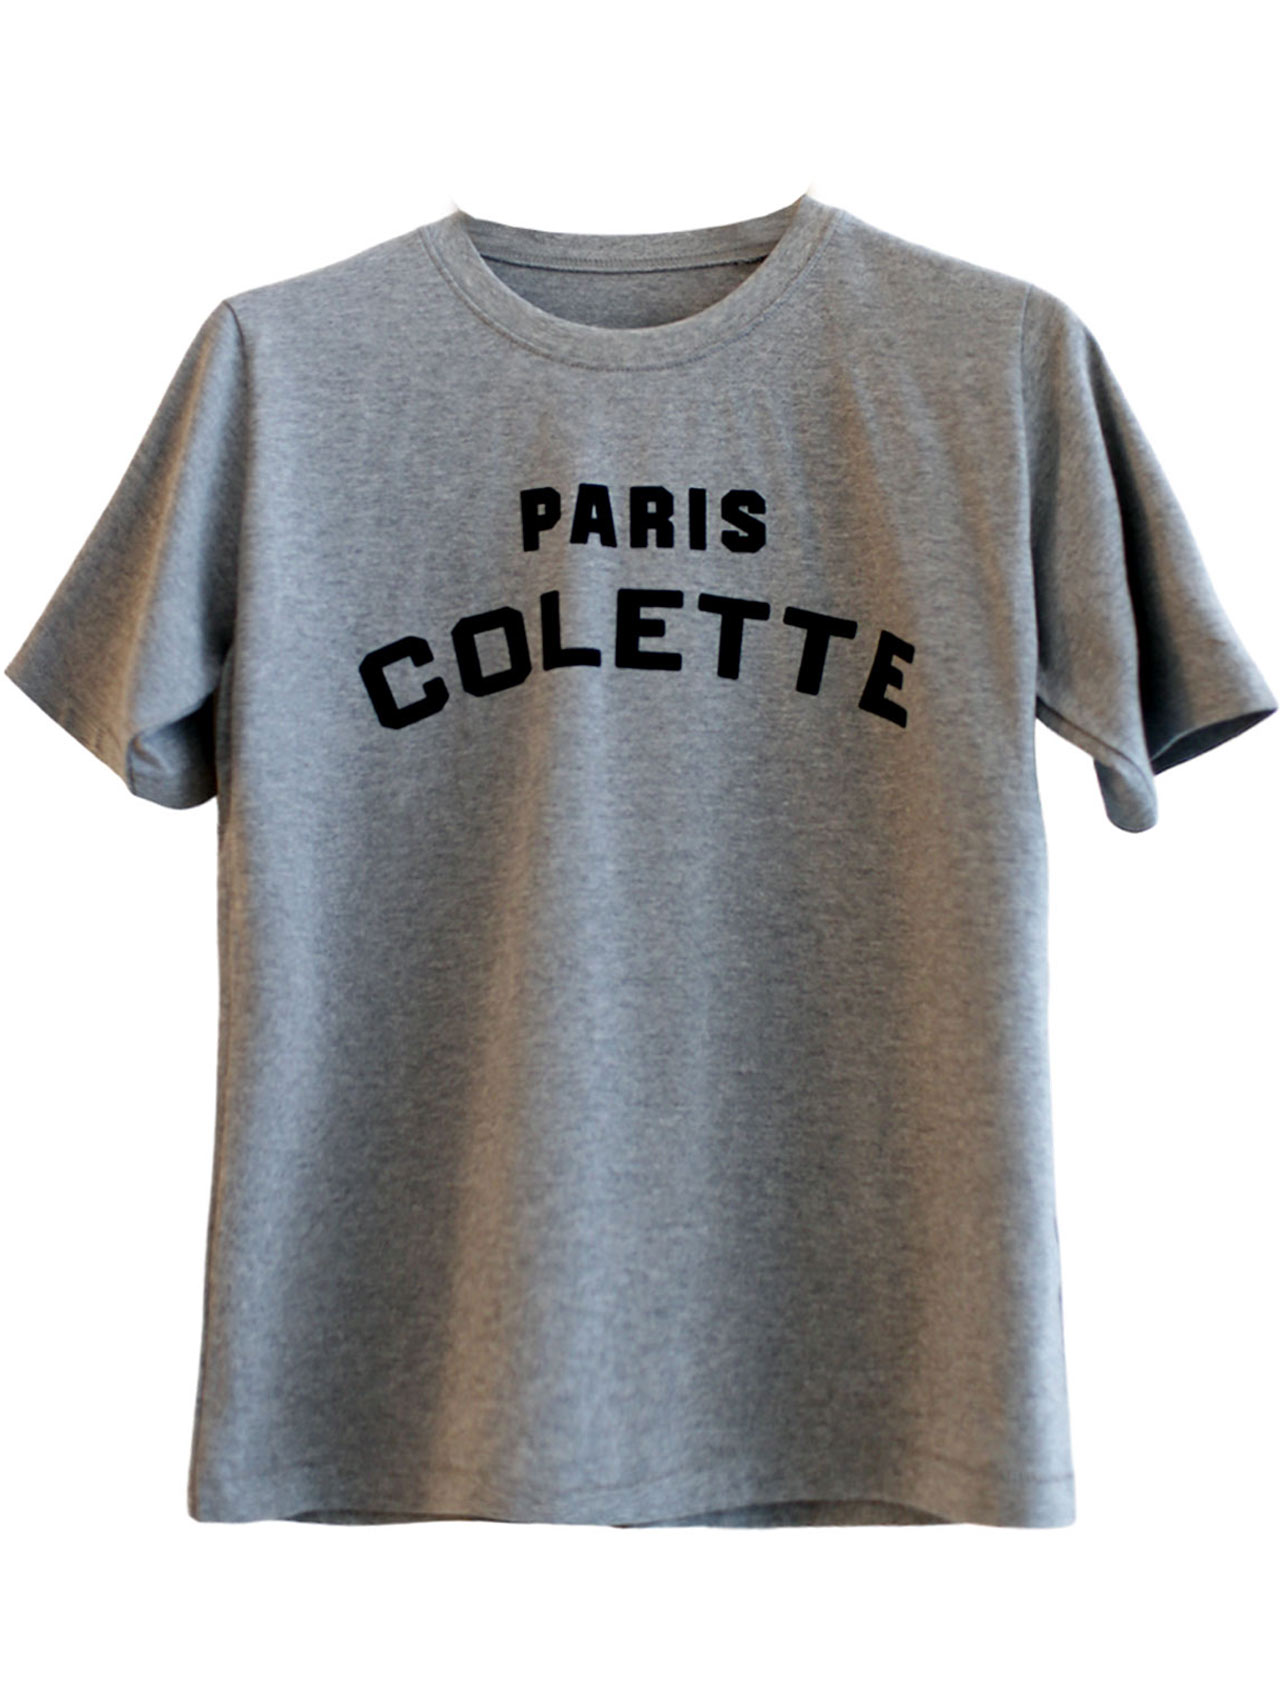 paris 콜레트 티셔츠(2color)